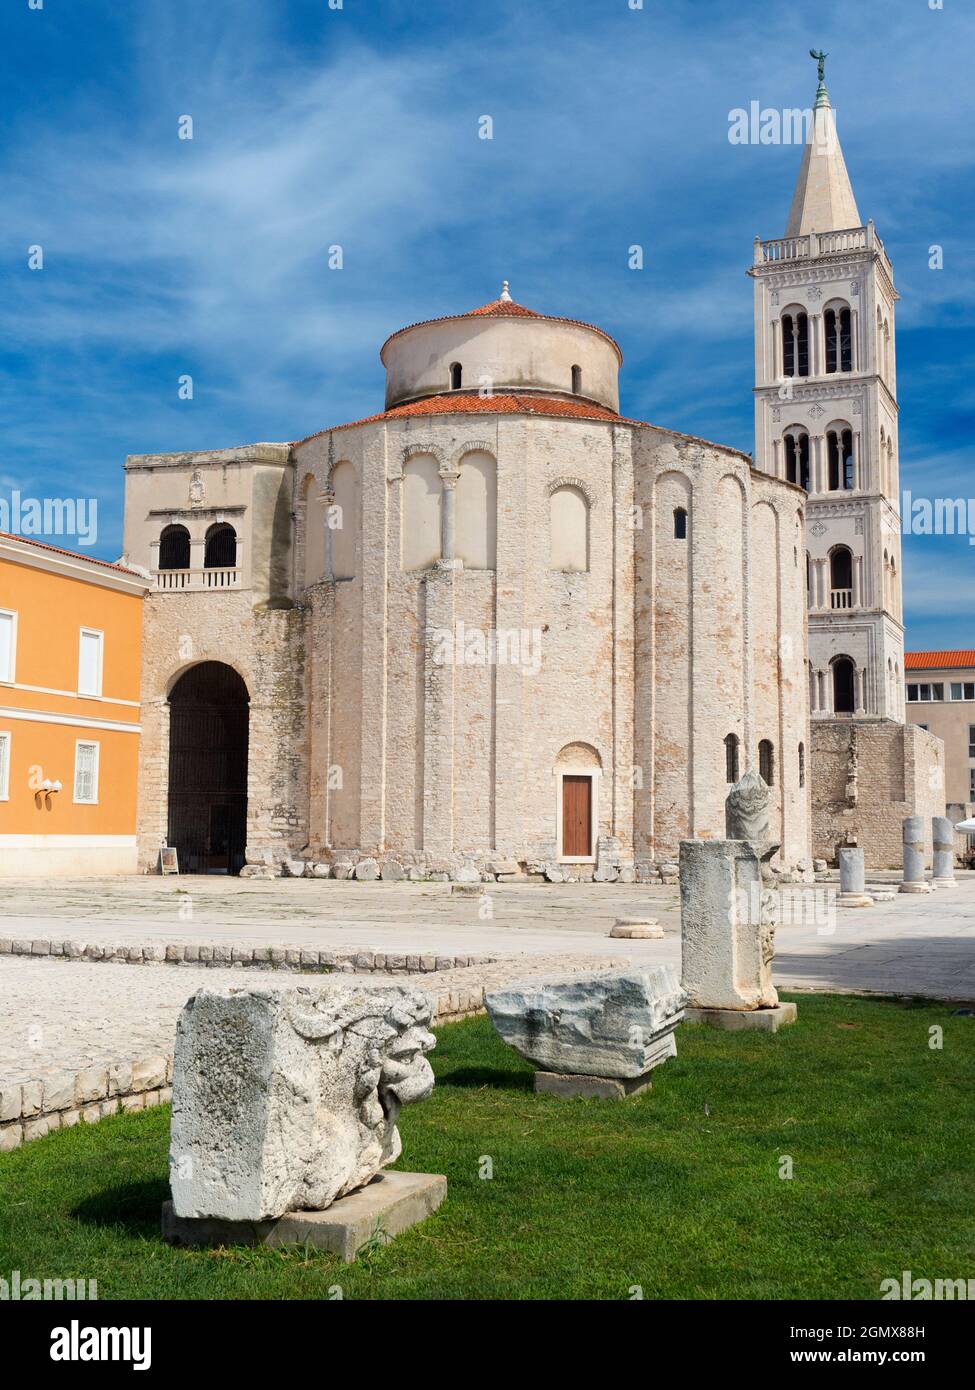 Zadar ist die älteste kontinuierlich bewohnte Stadt in Kroatien. Es liegt an der Adria, im nordwestlichen Teil der Region Ravni Kotari. Das c Stockfoto